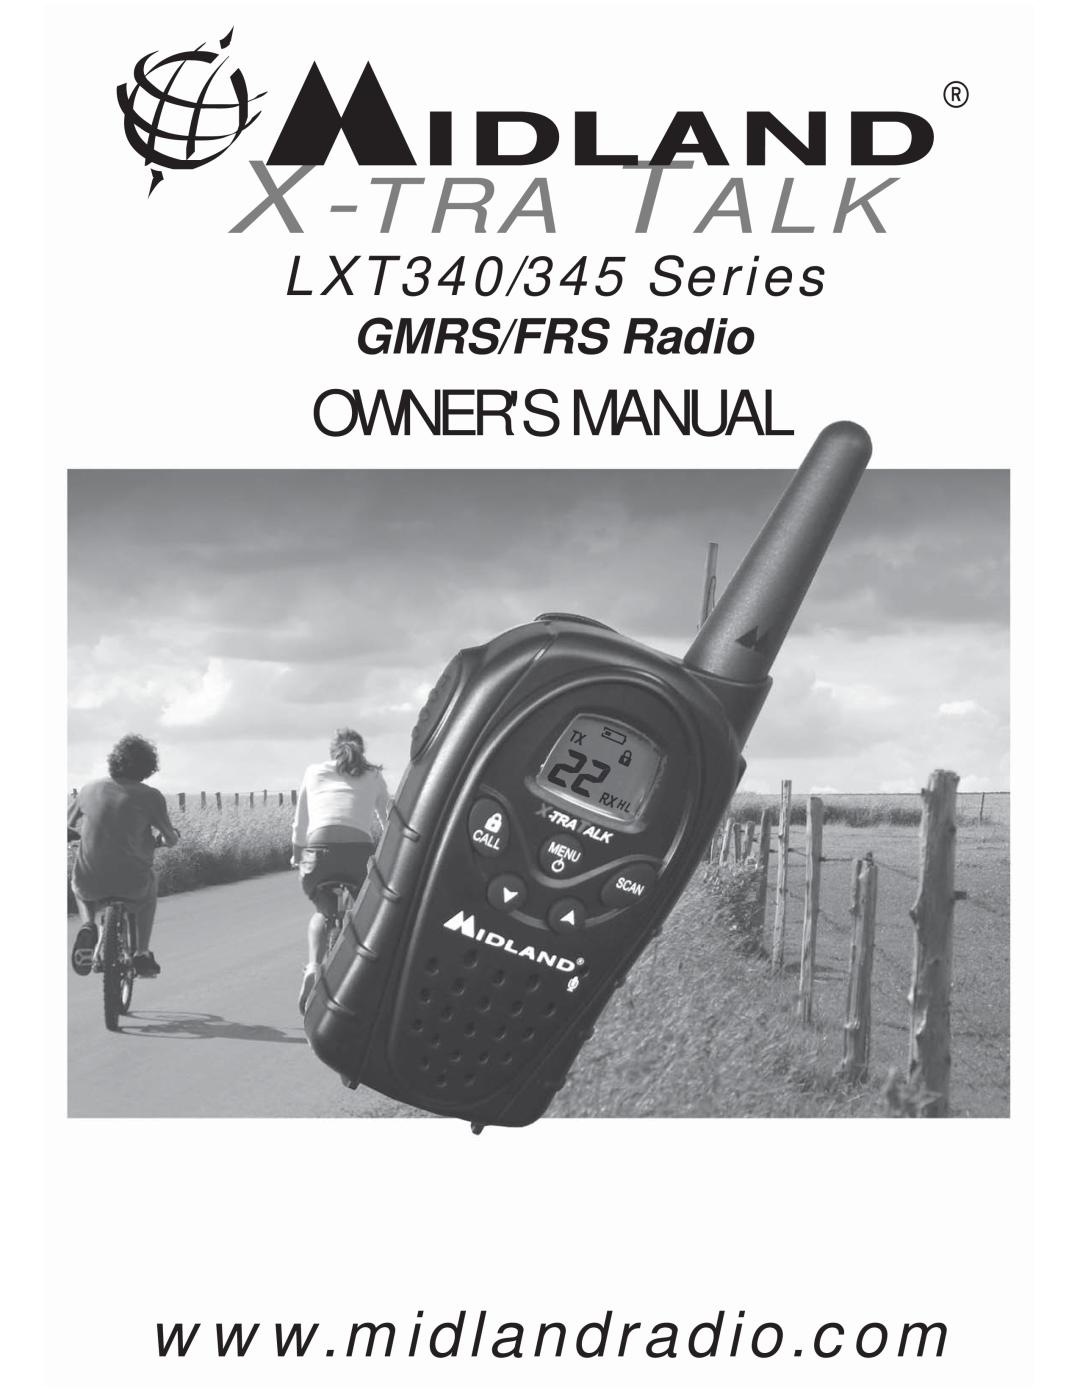 Midland Radio LXT345 Series, LXT340 Series owner manual X-Tra Talk, LXT340/345 Series, GMRS/FRS Radio 